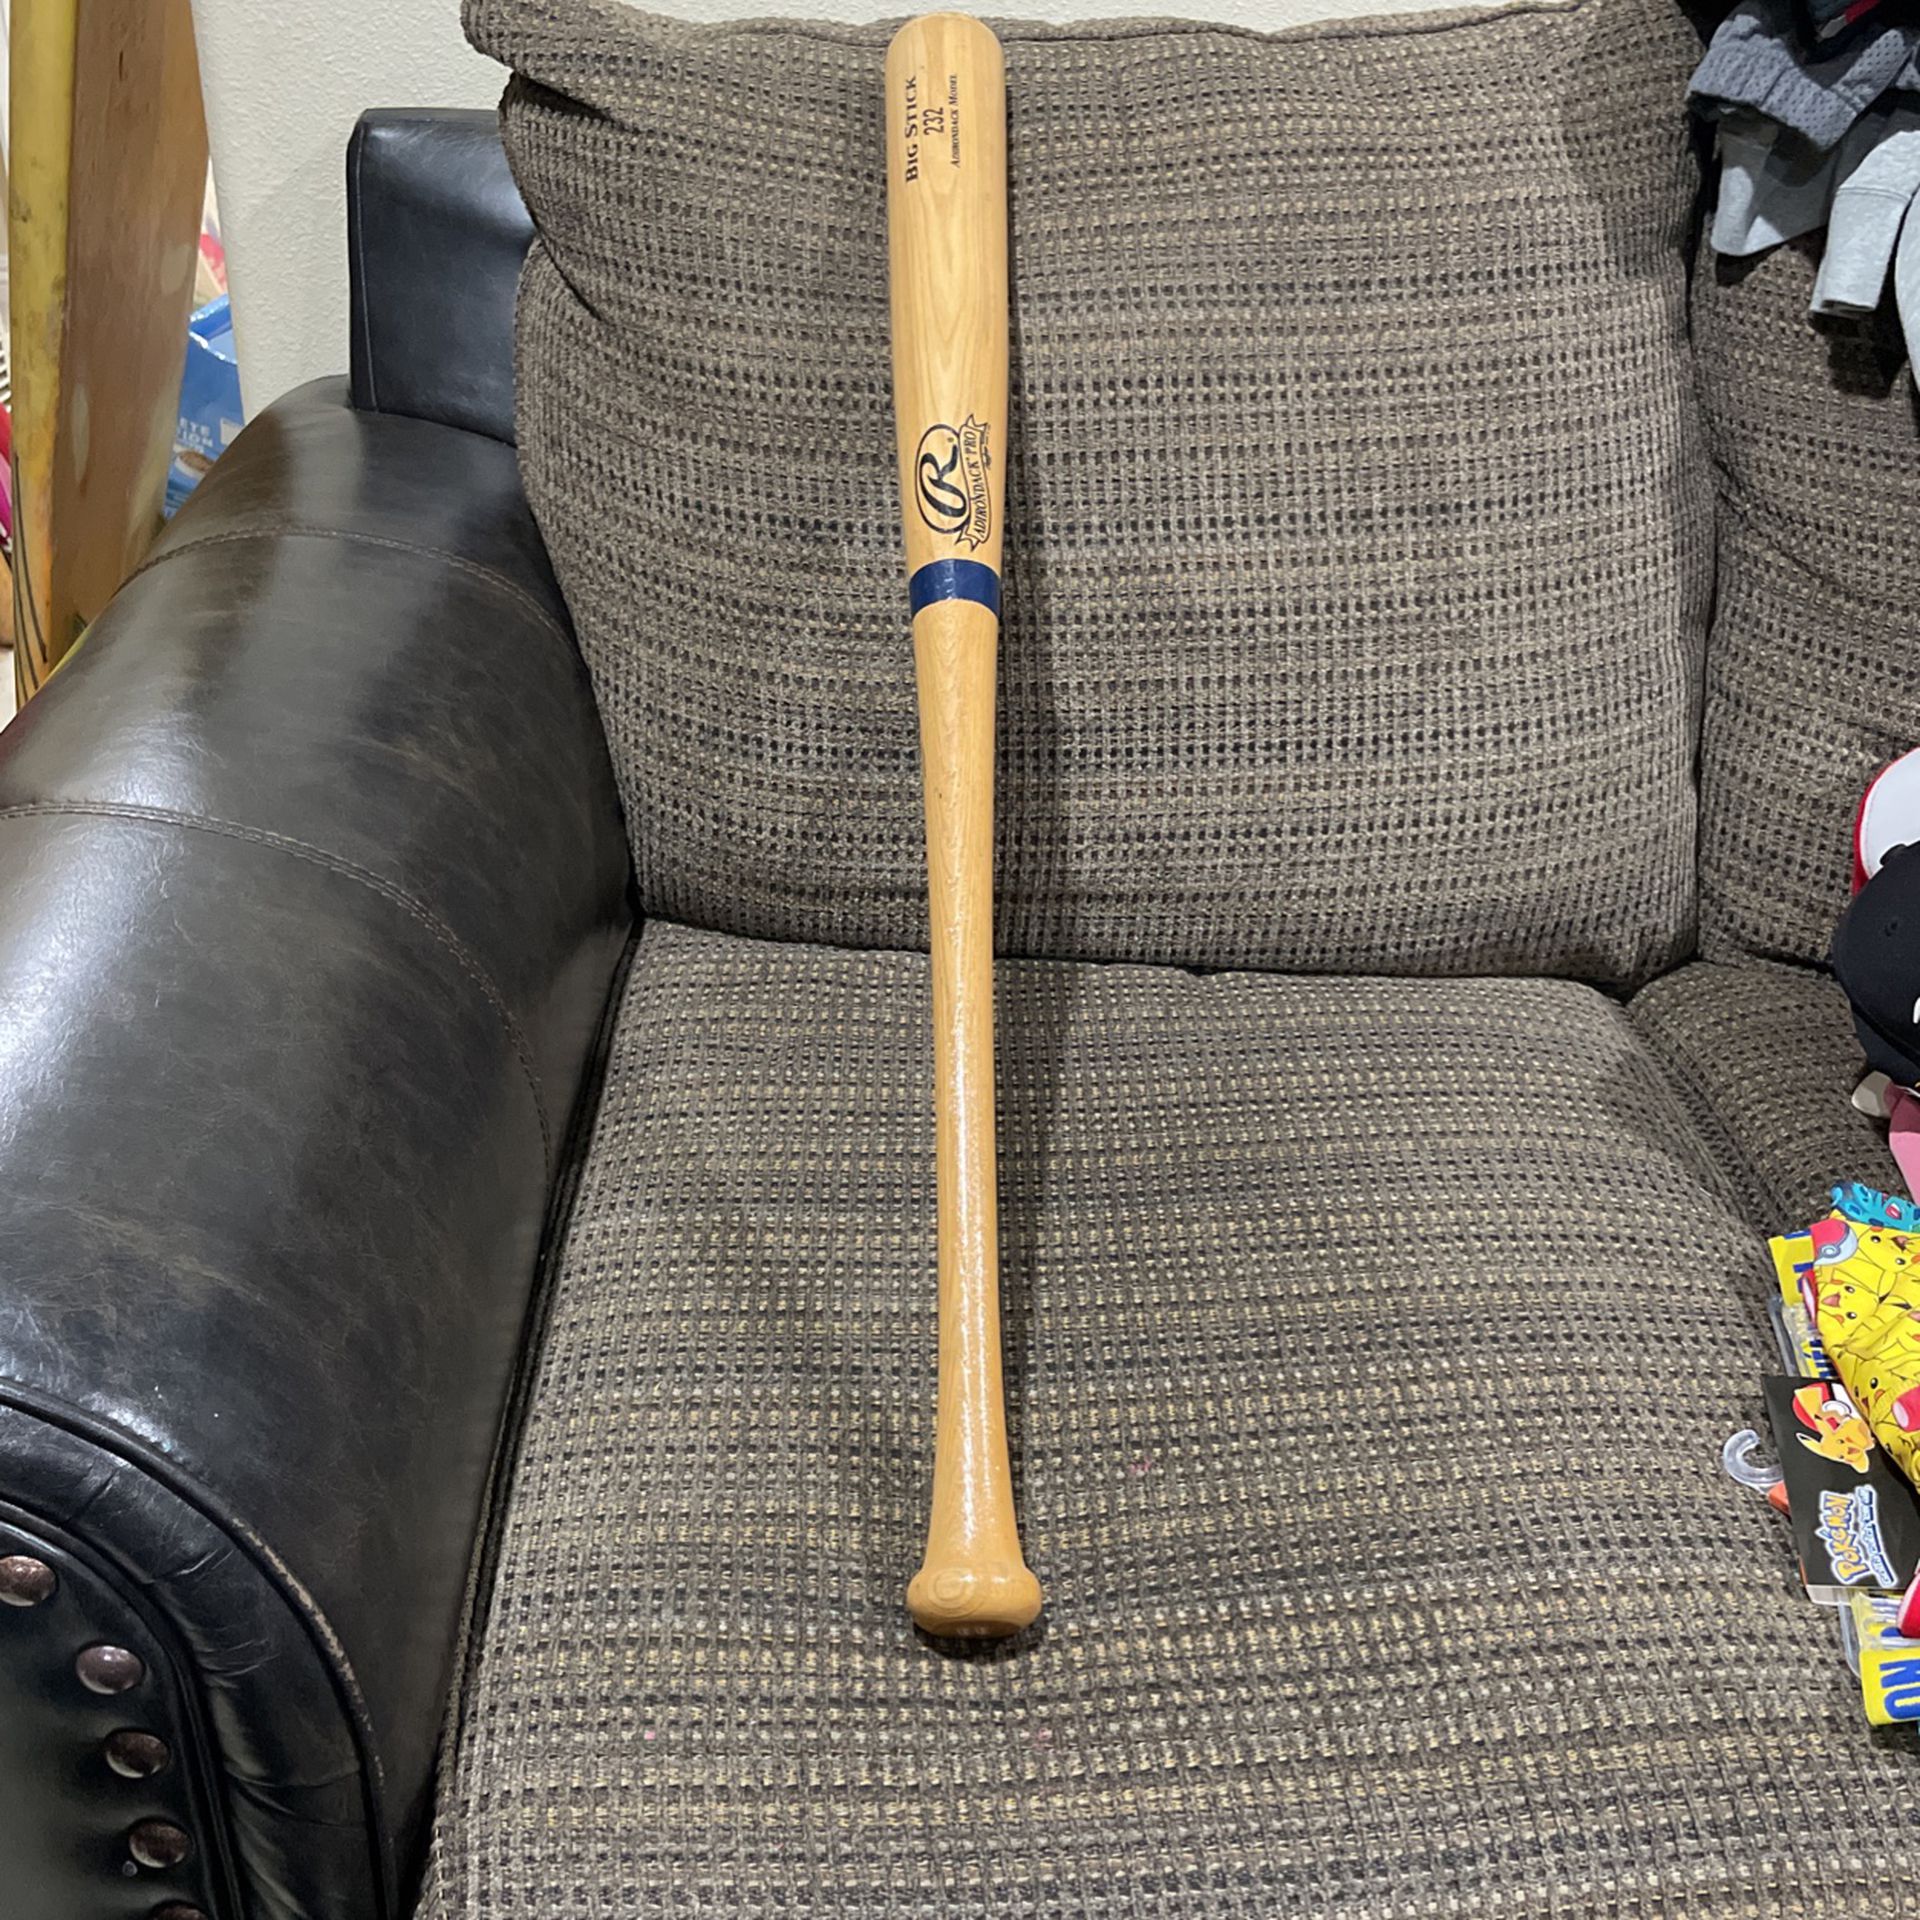 Rawlings Adirond Pro Big Stick 232 Baseball Bat.